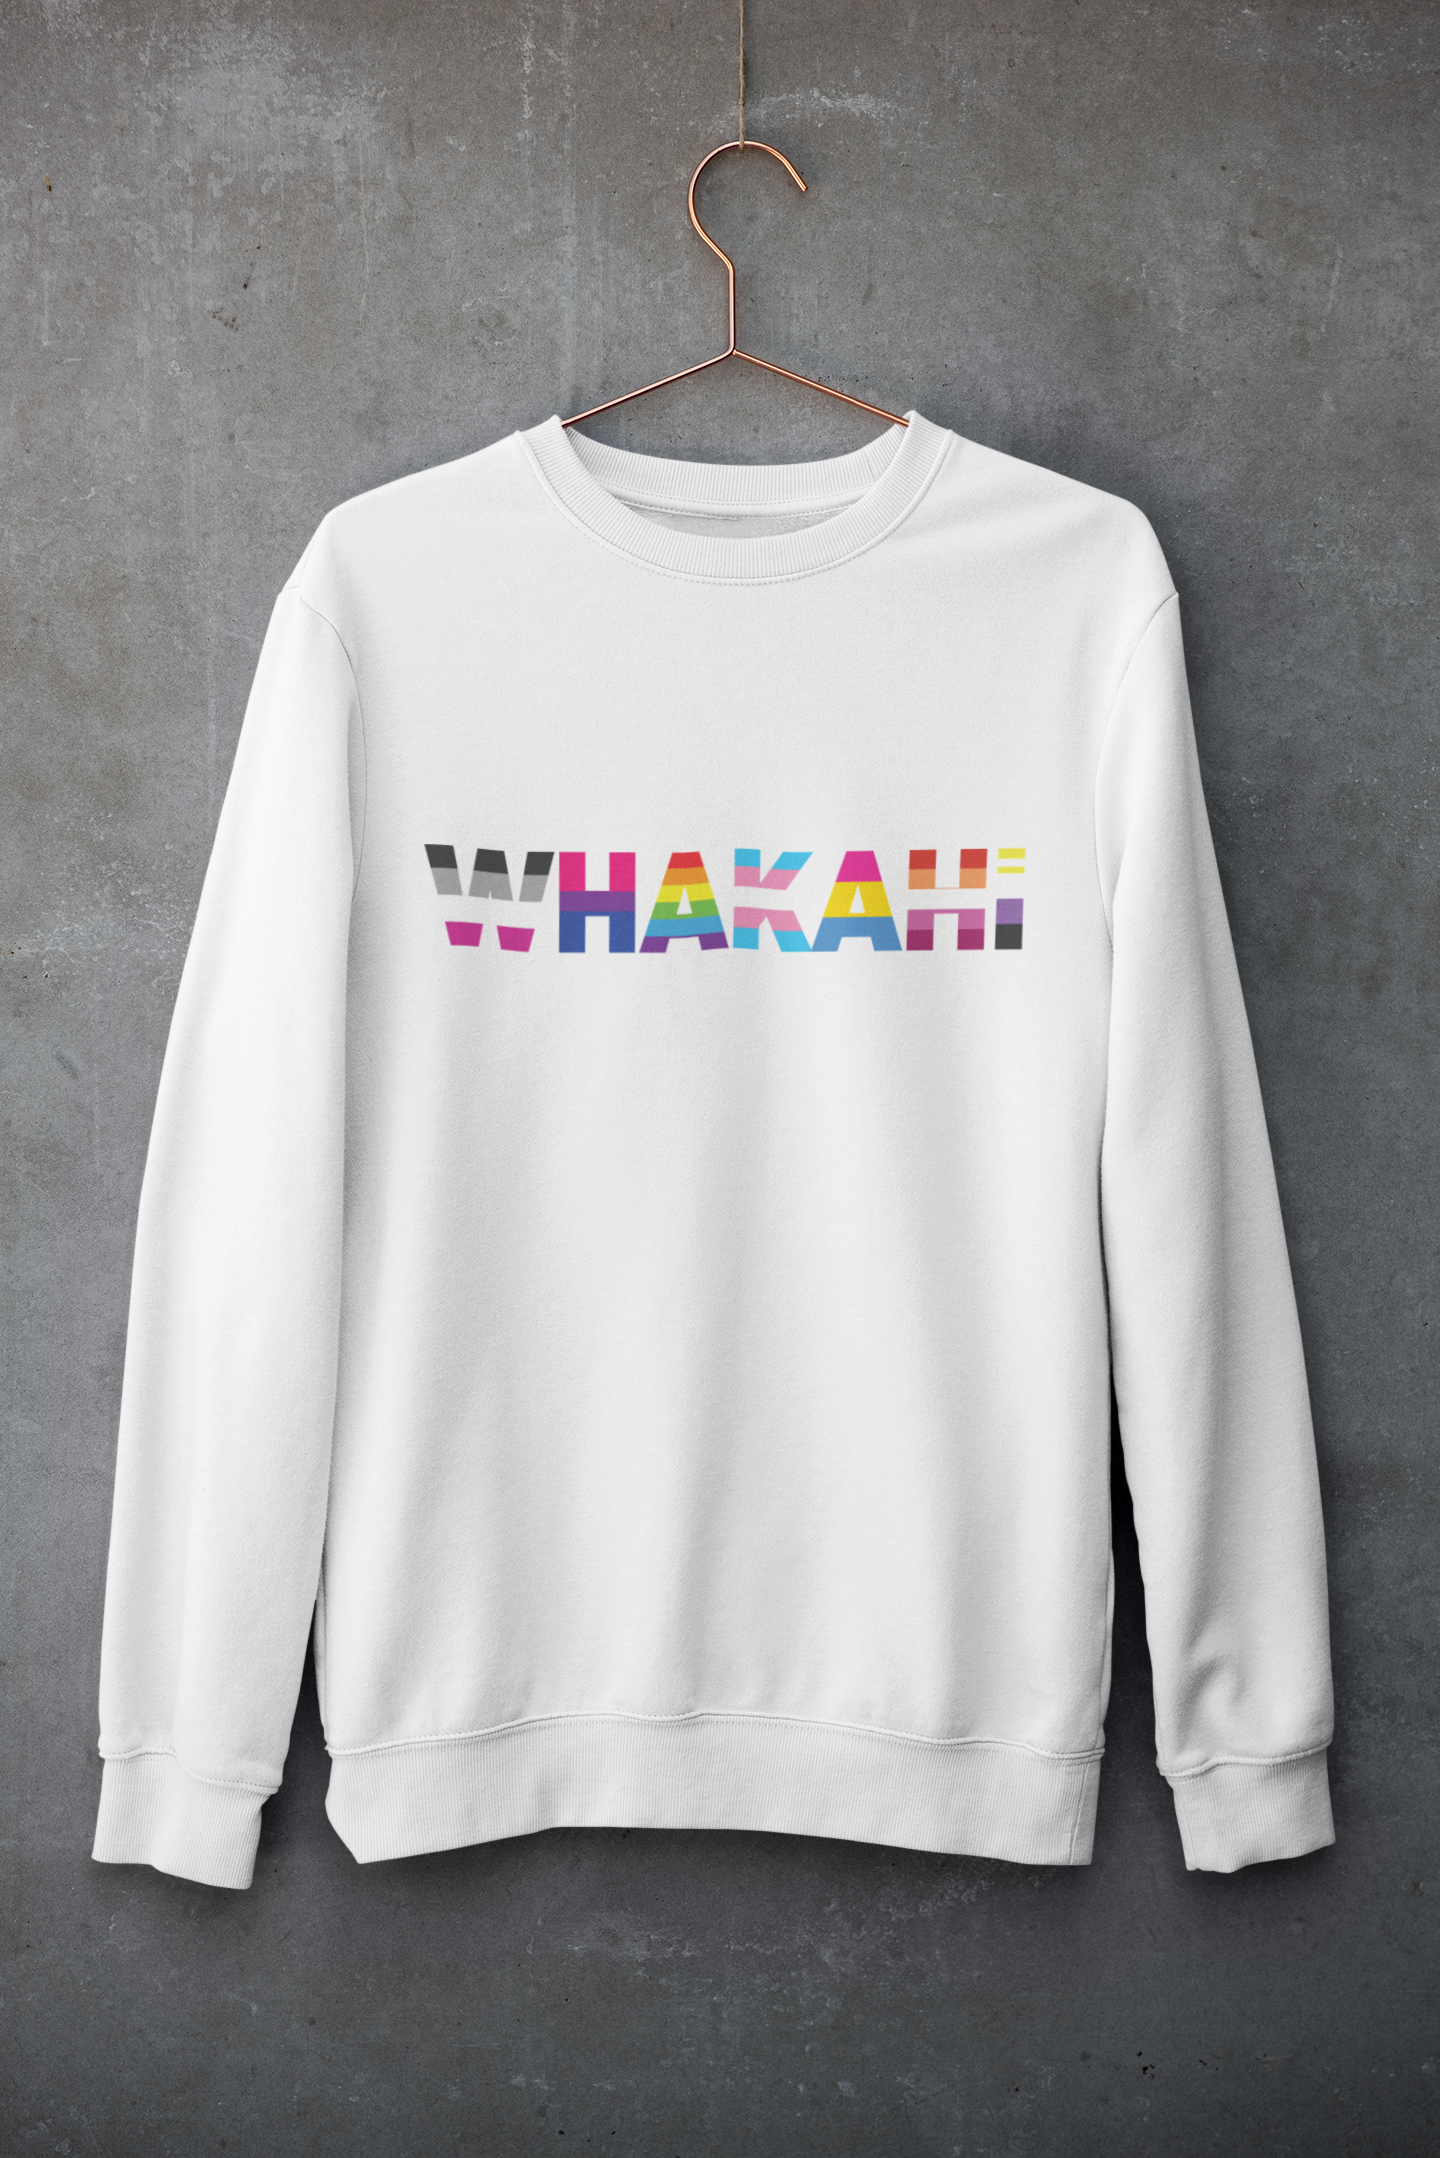 WHAKAHI - Sweatshirt